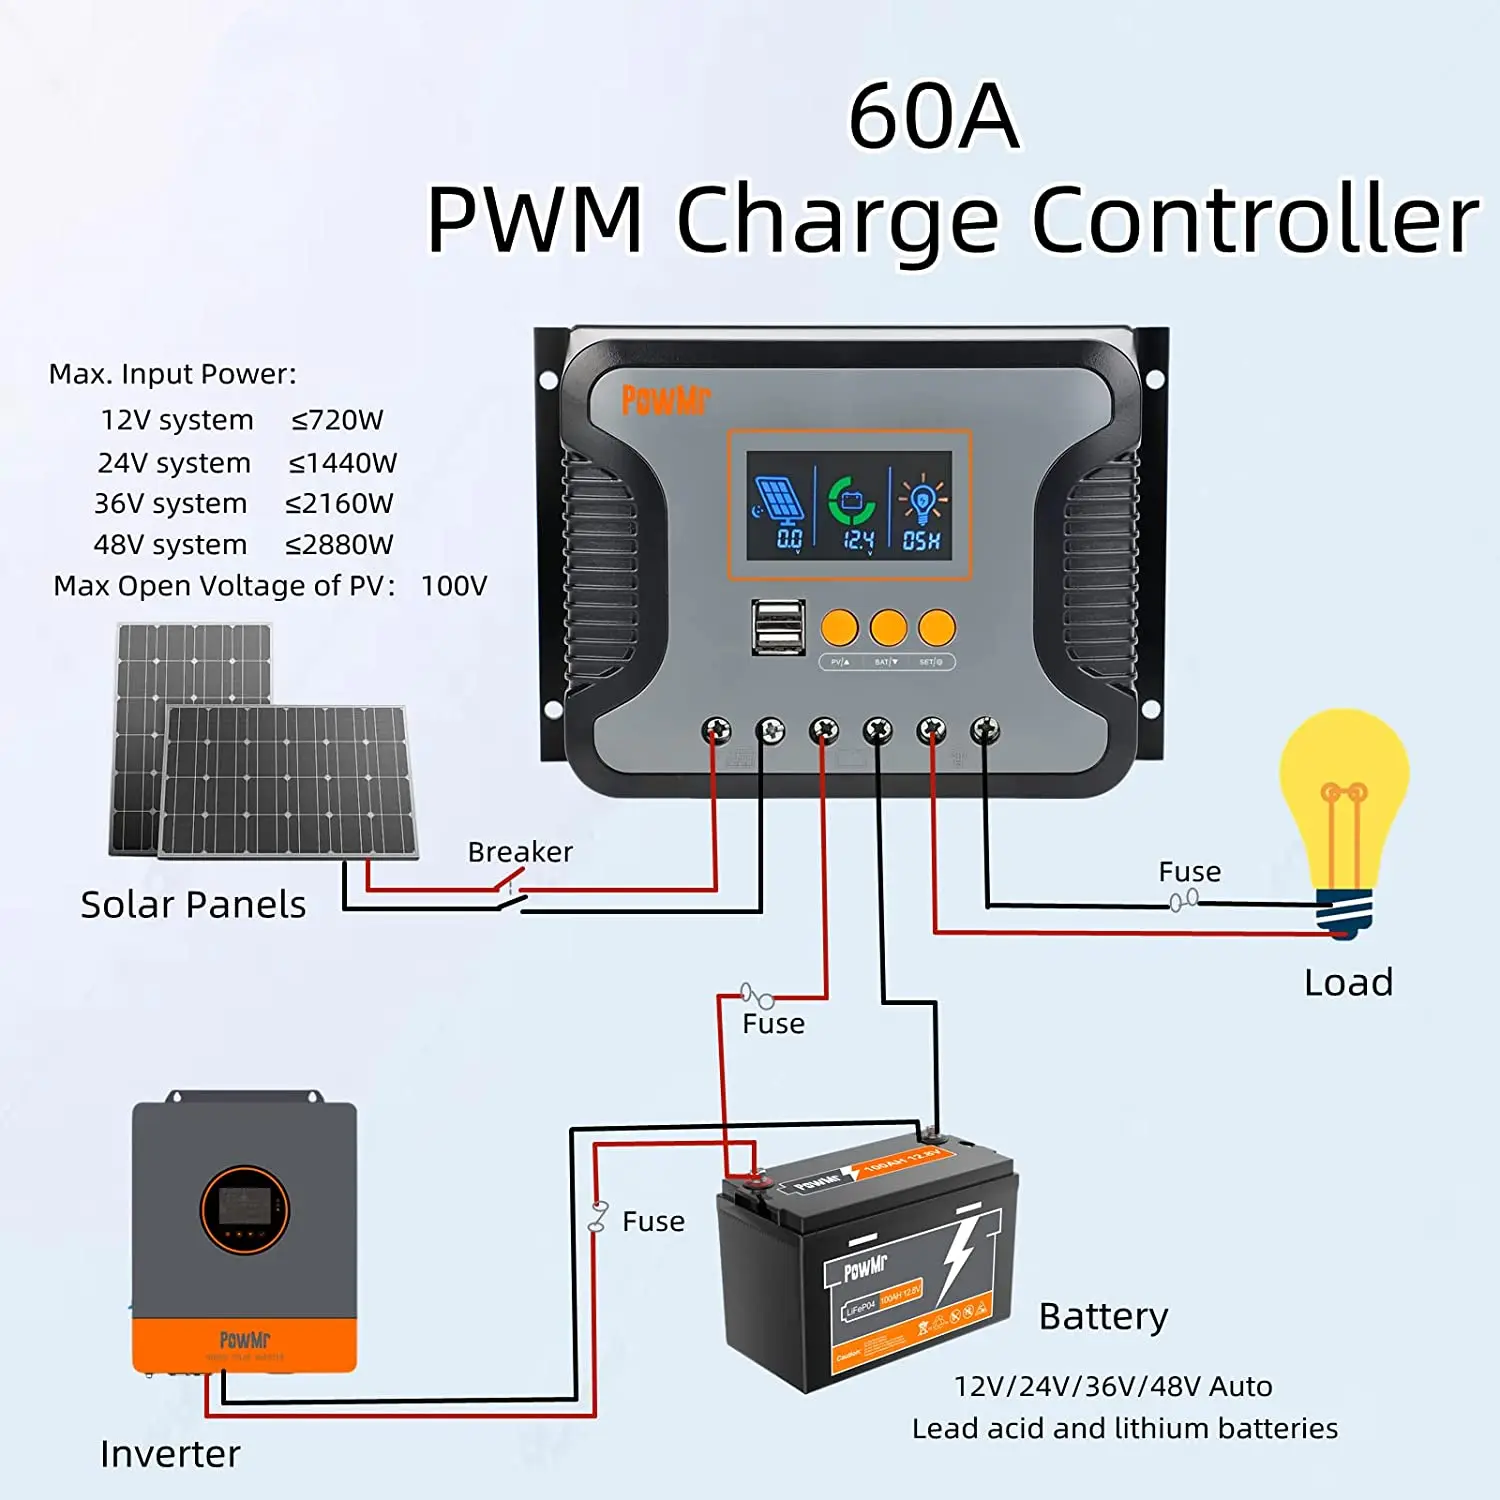 Controlador de carga PWM 80A, 12V/24V/36V/48V Auto Max PV 100V. Puesta a  tierra positiva, controlador de carga solar de 80 amperios, pantalla LCD